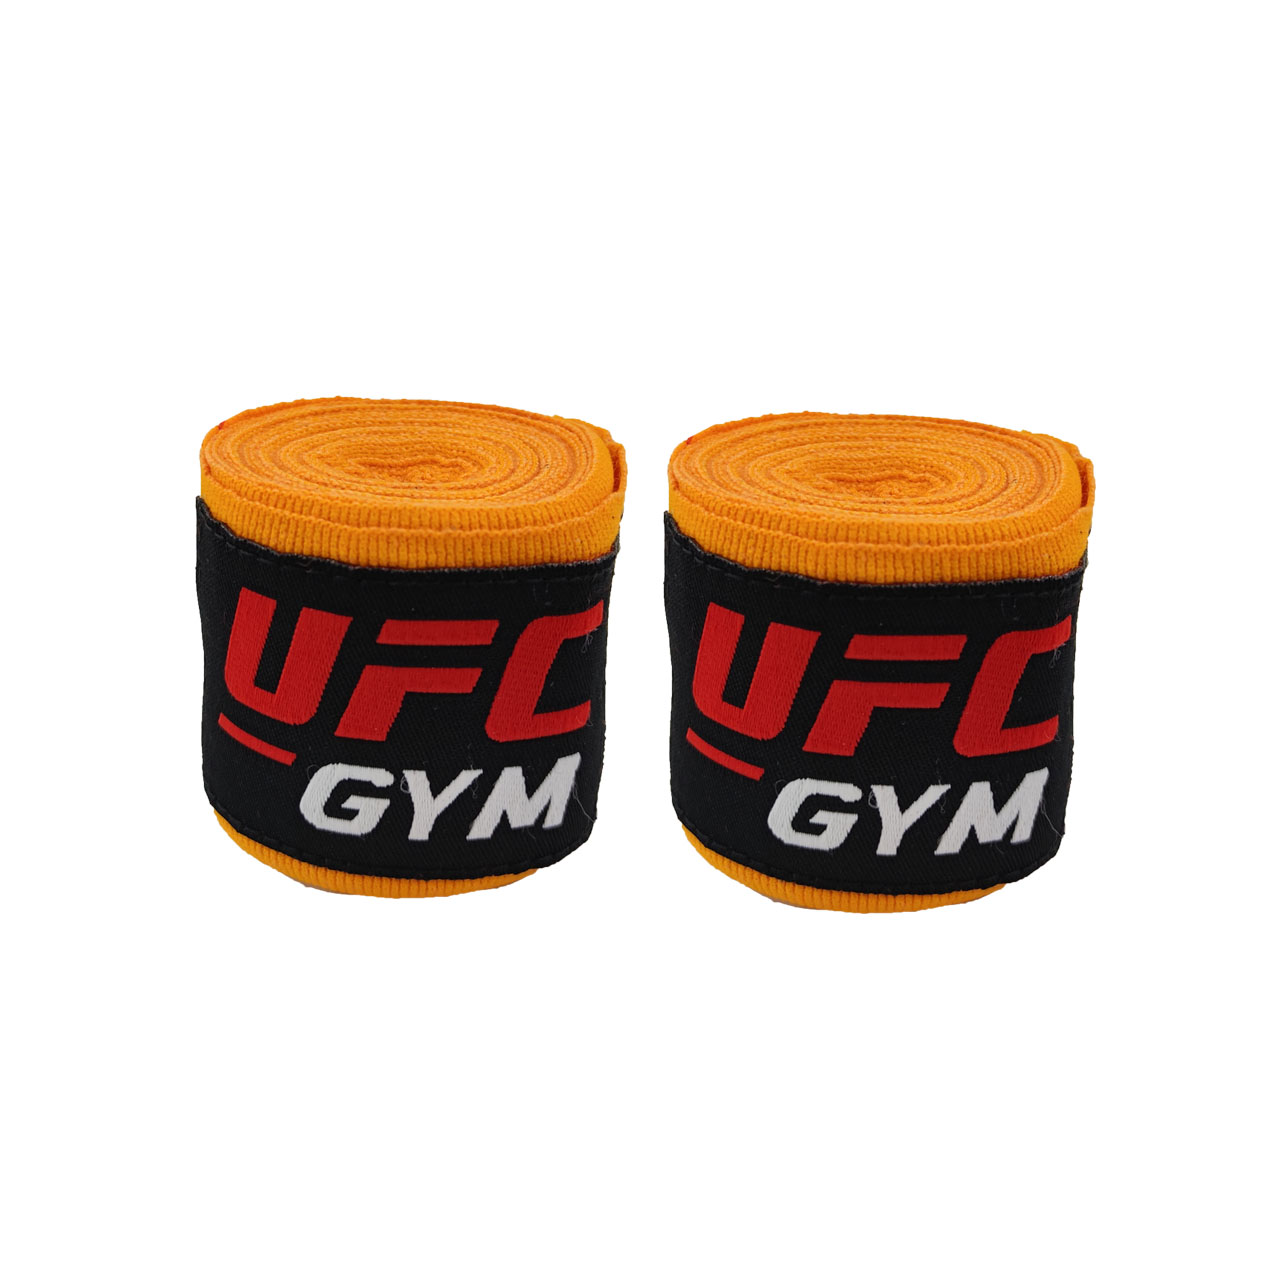 باند بوکس مدل UFC21 بسته 2 عددی